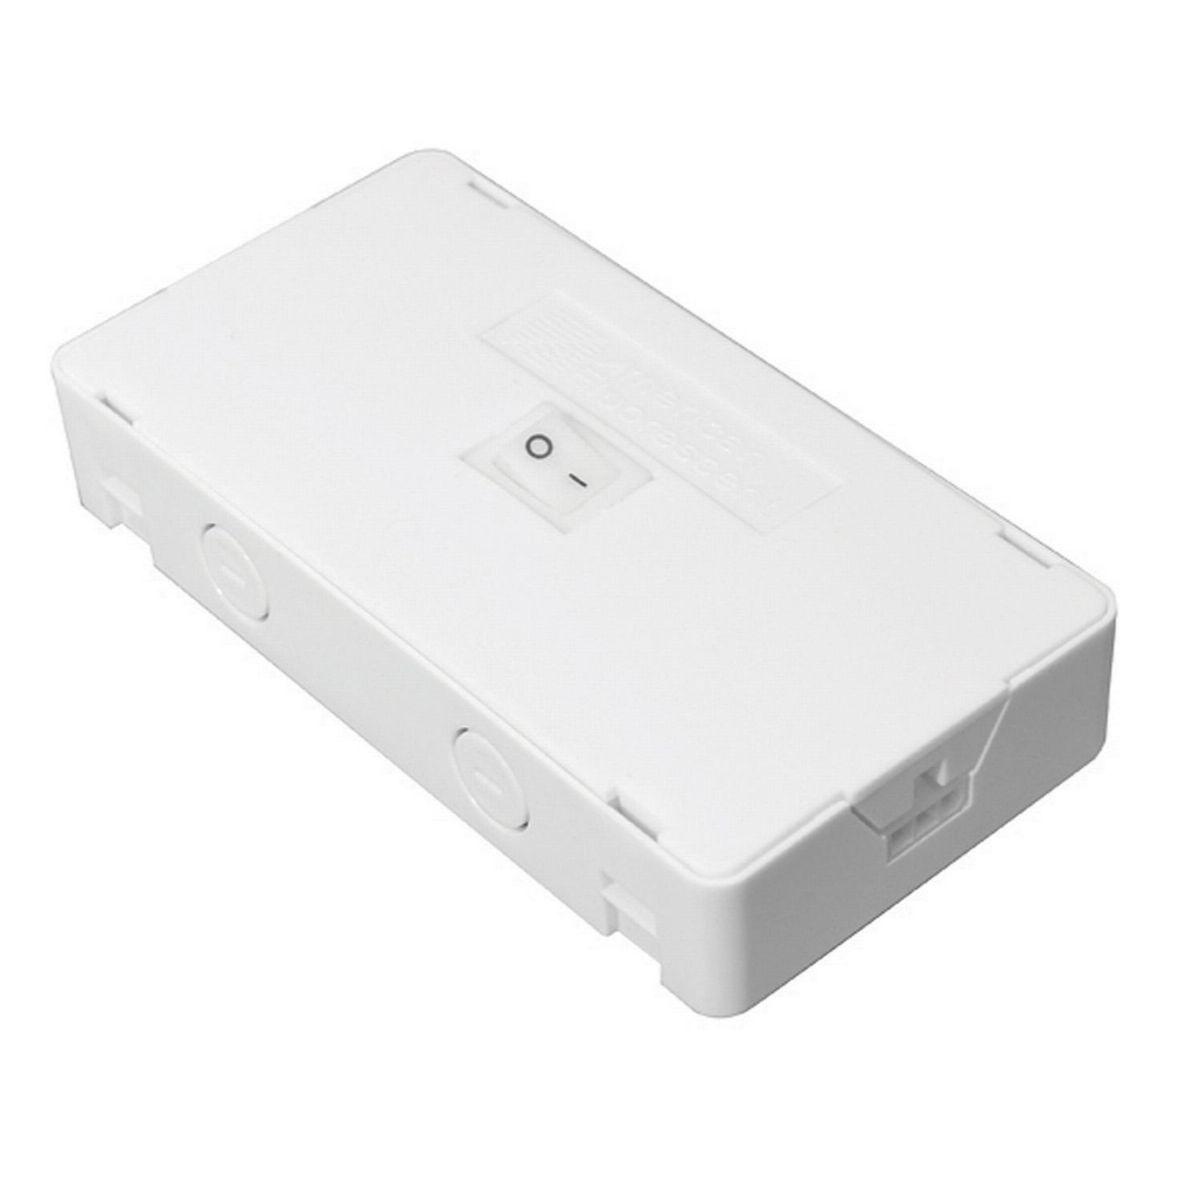 White Hardwire Box for Elena Task Lighting